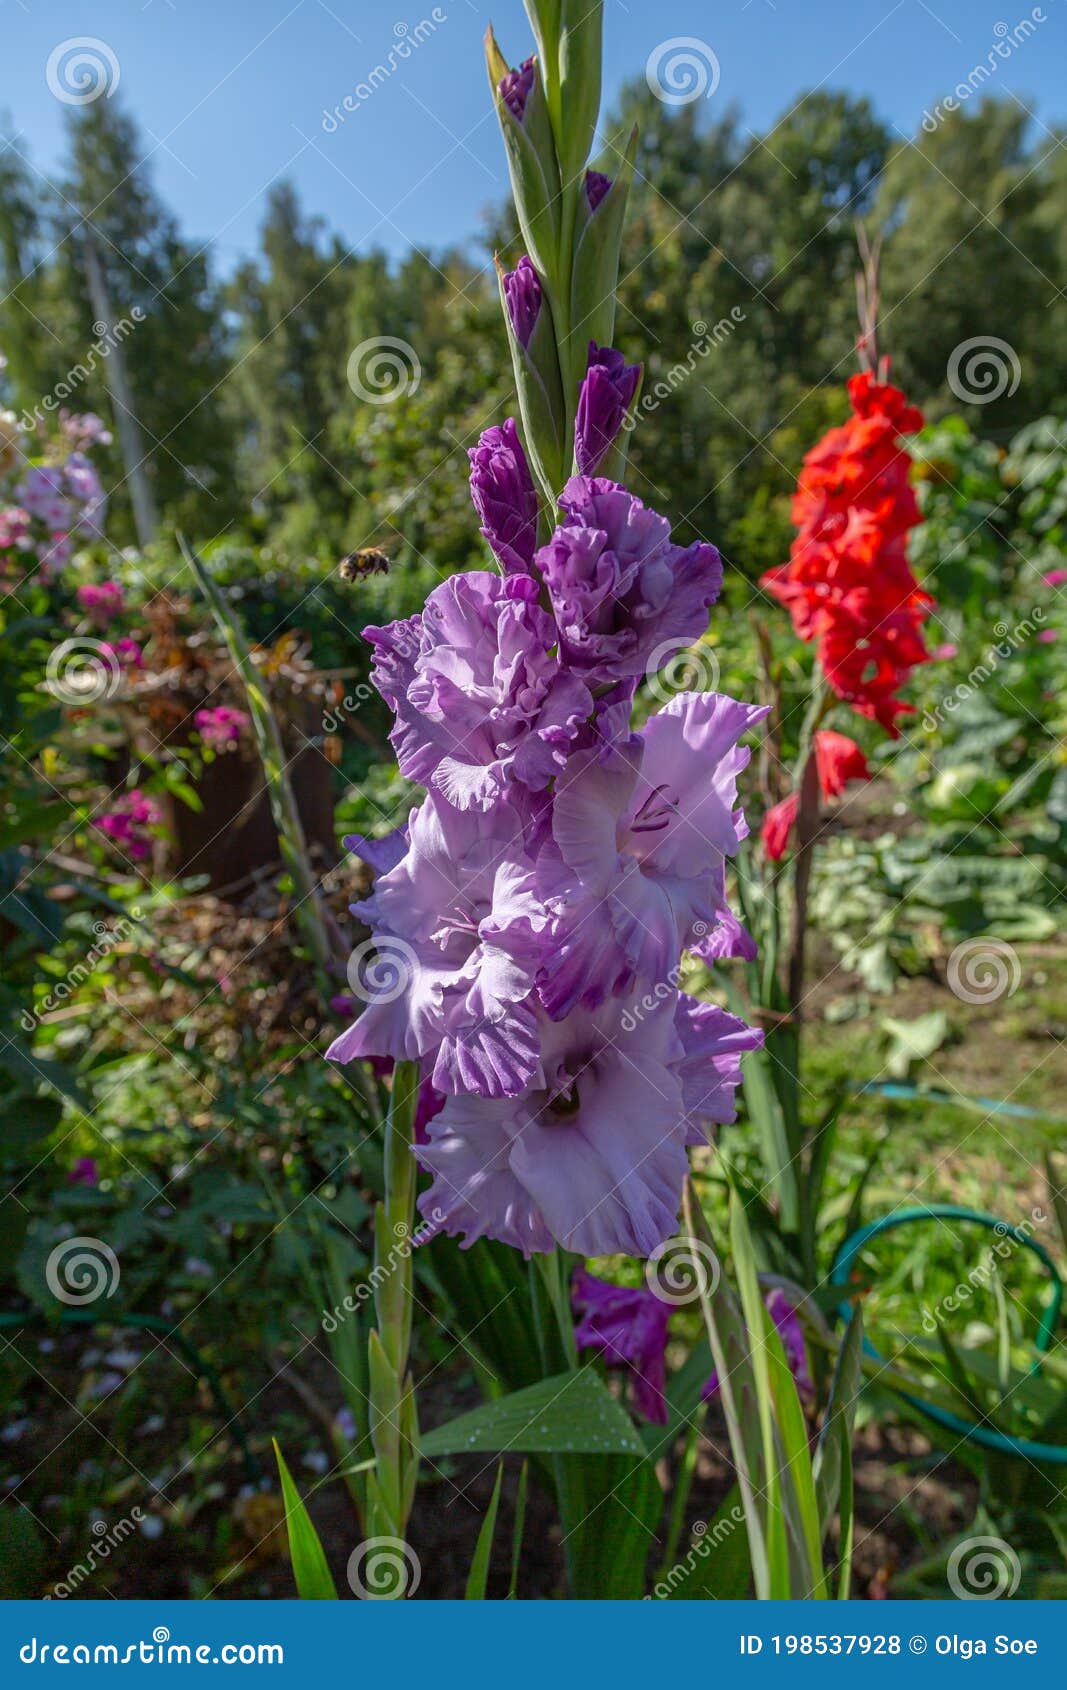 purple flower gladiolos close up in garden